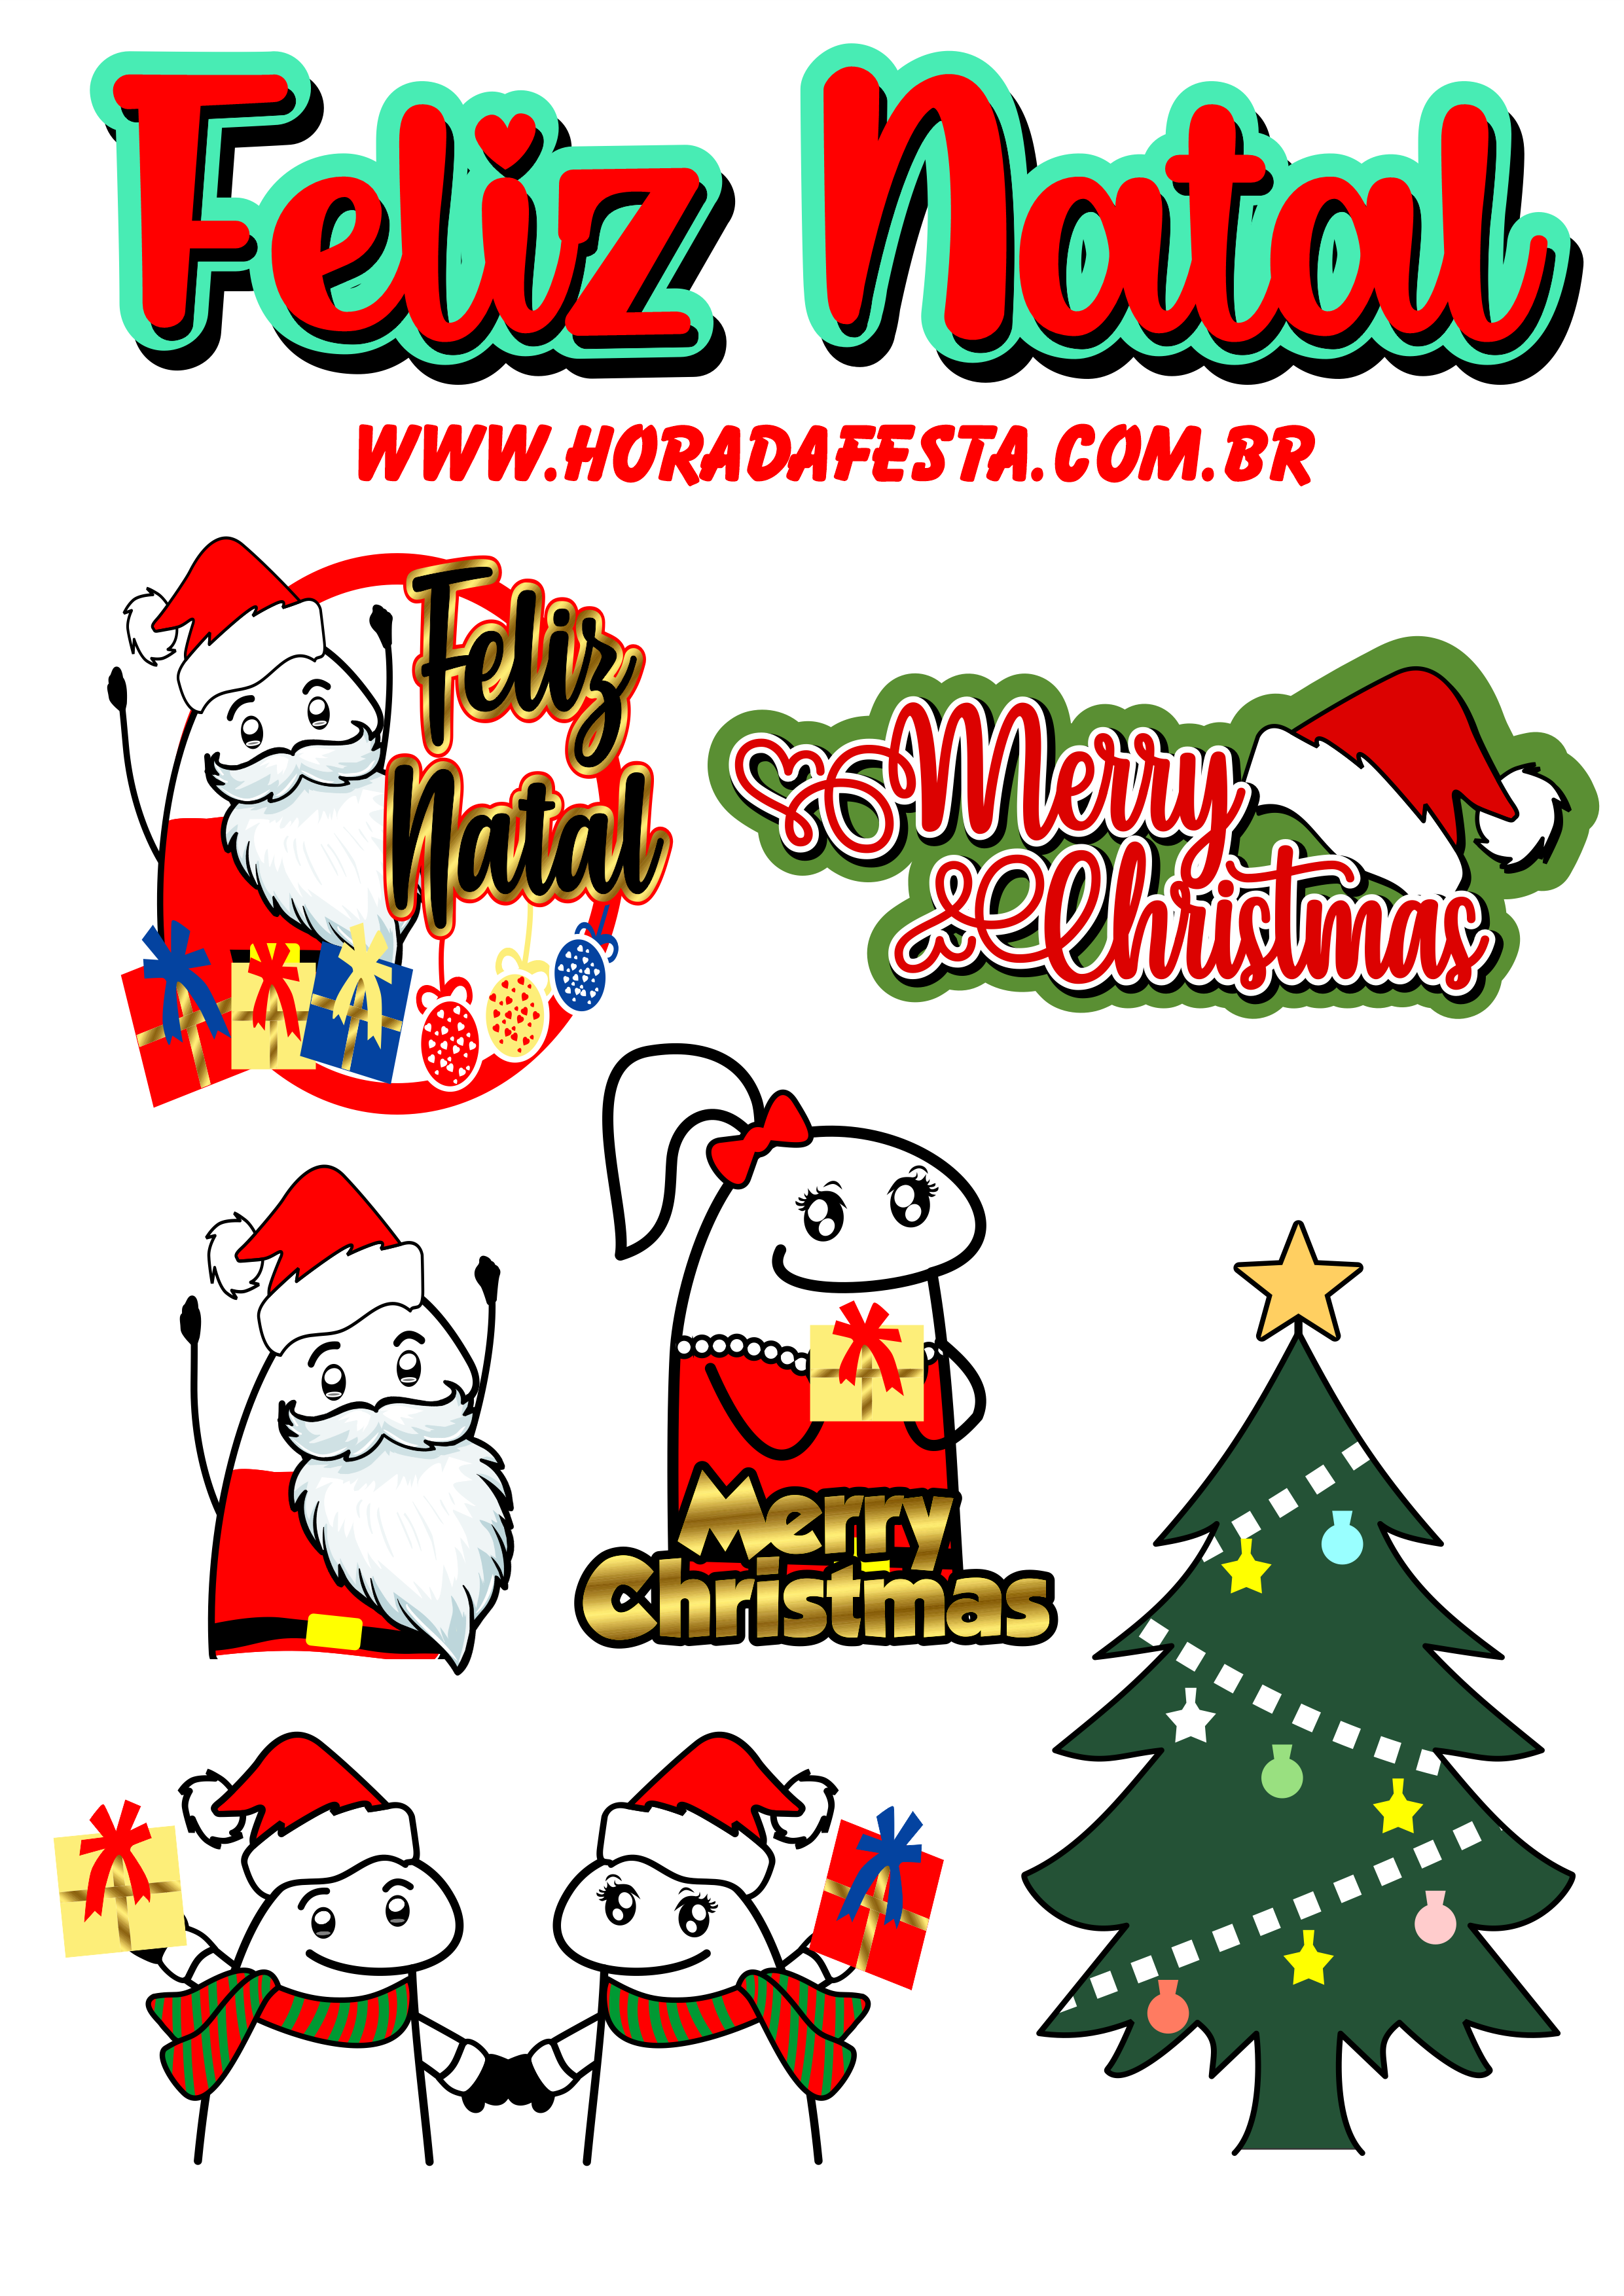 Feliz Natal figurinhas engraçadas para whatsapp flork of cows presente merry christmas papai noel boas festas árvore de natal papelaria png